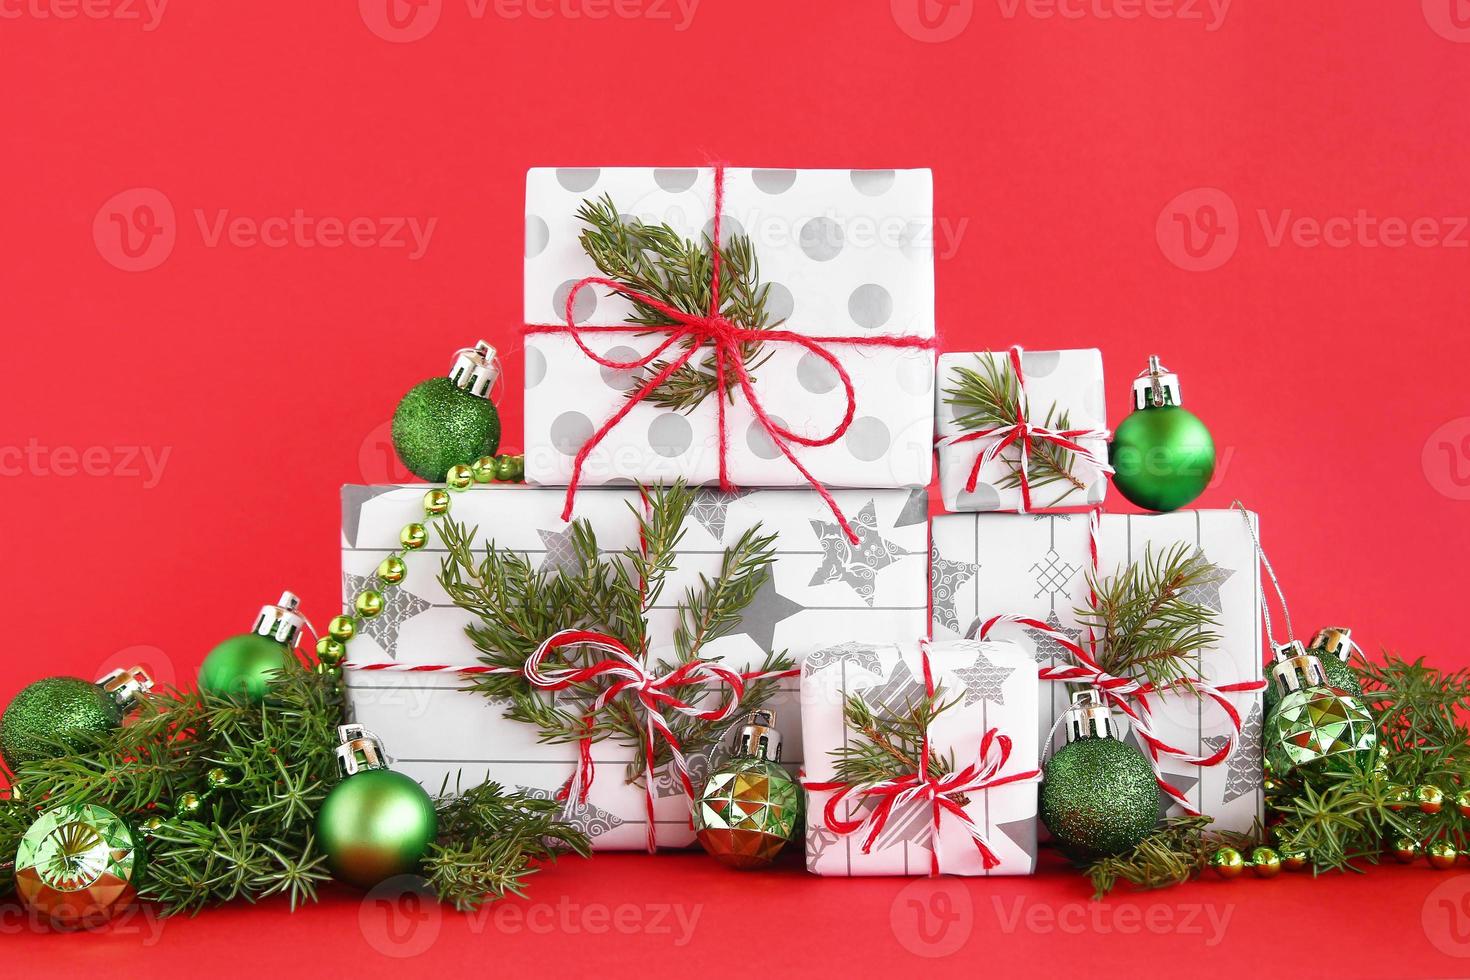 caixas de presente de natal embrulhadas em papel branco-cinza com fitas vermelho-brancas sobre fundo vermelho, decoradas com galhos de abeto e decorações de natal verdes brilhantes. conceito de natal e ano novo. foto